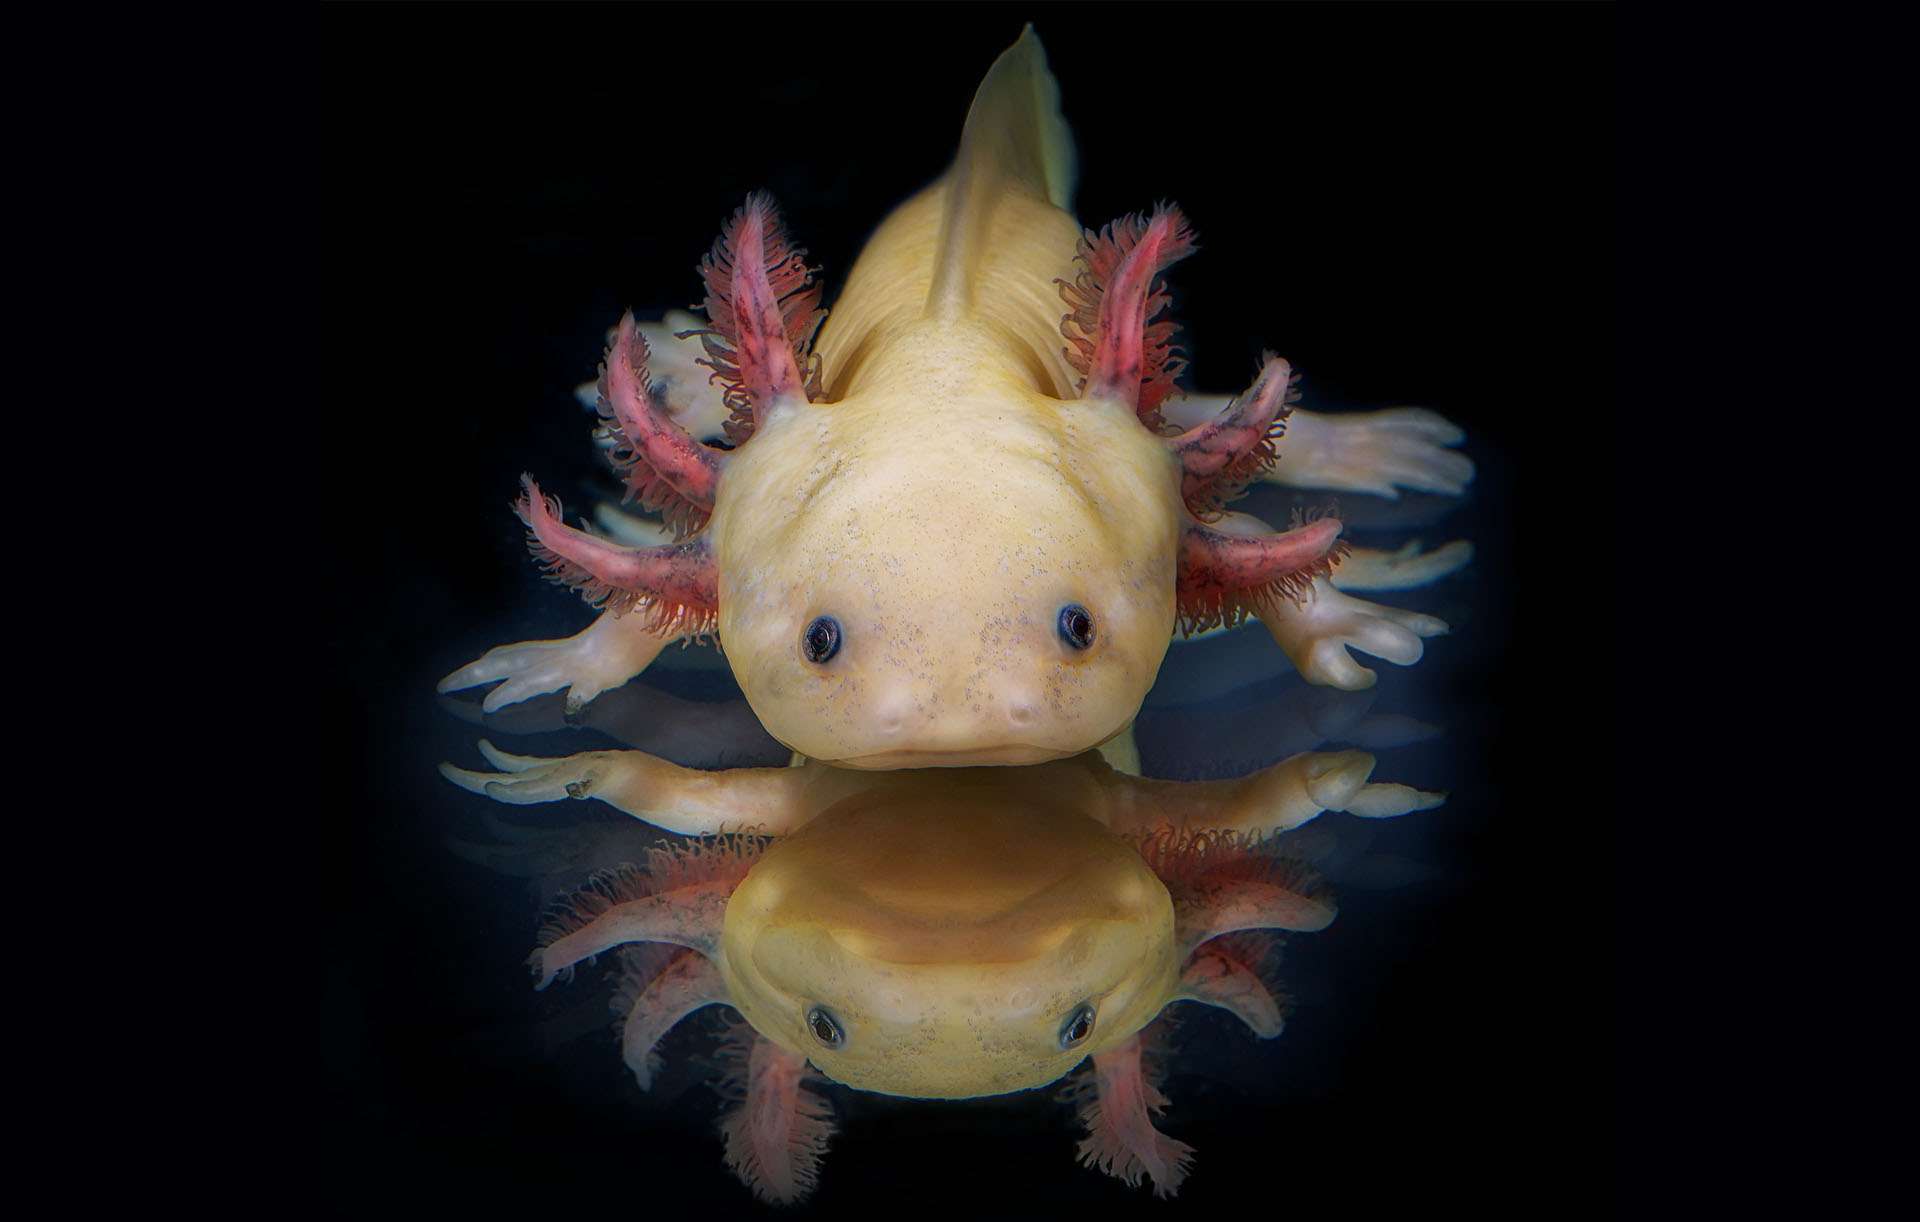 L'axolotl, cet amphibien qui sait régénérer son corps